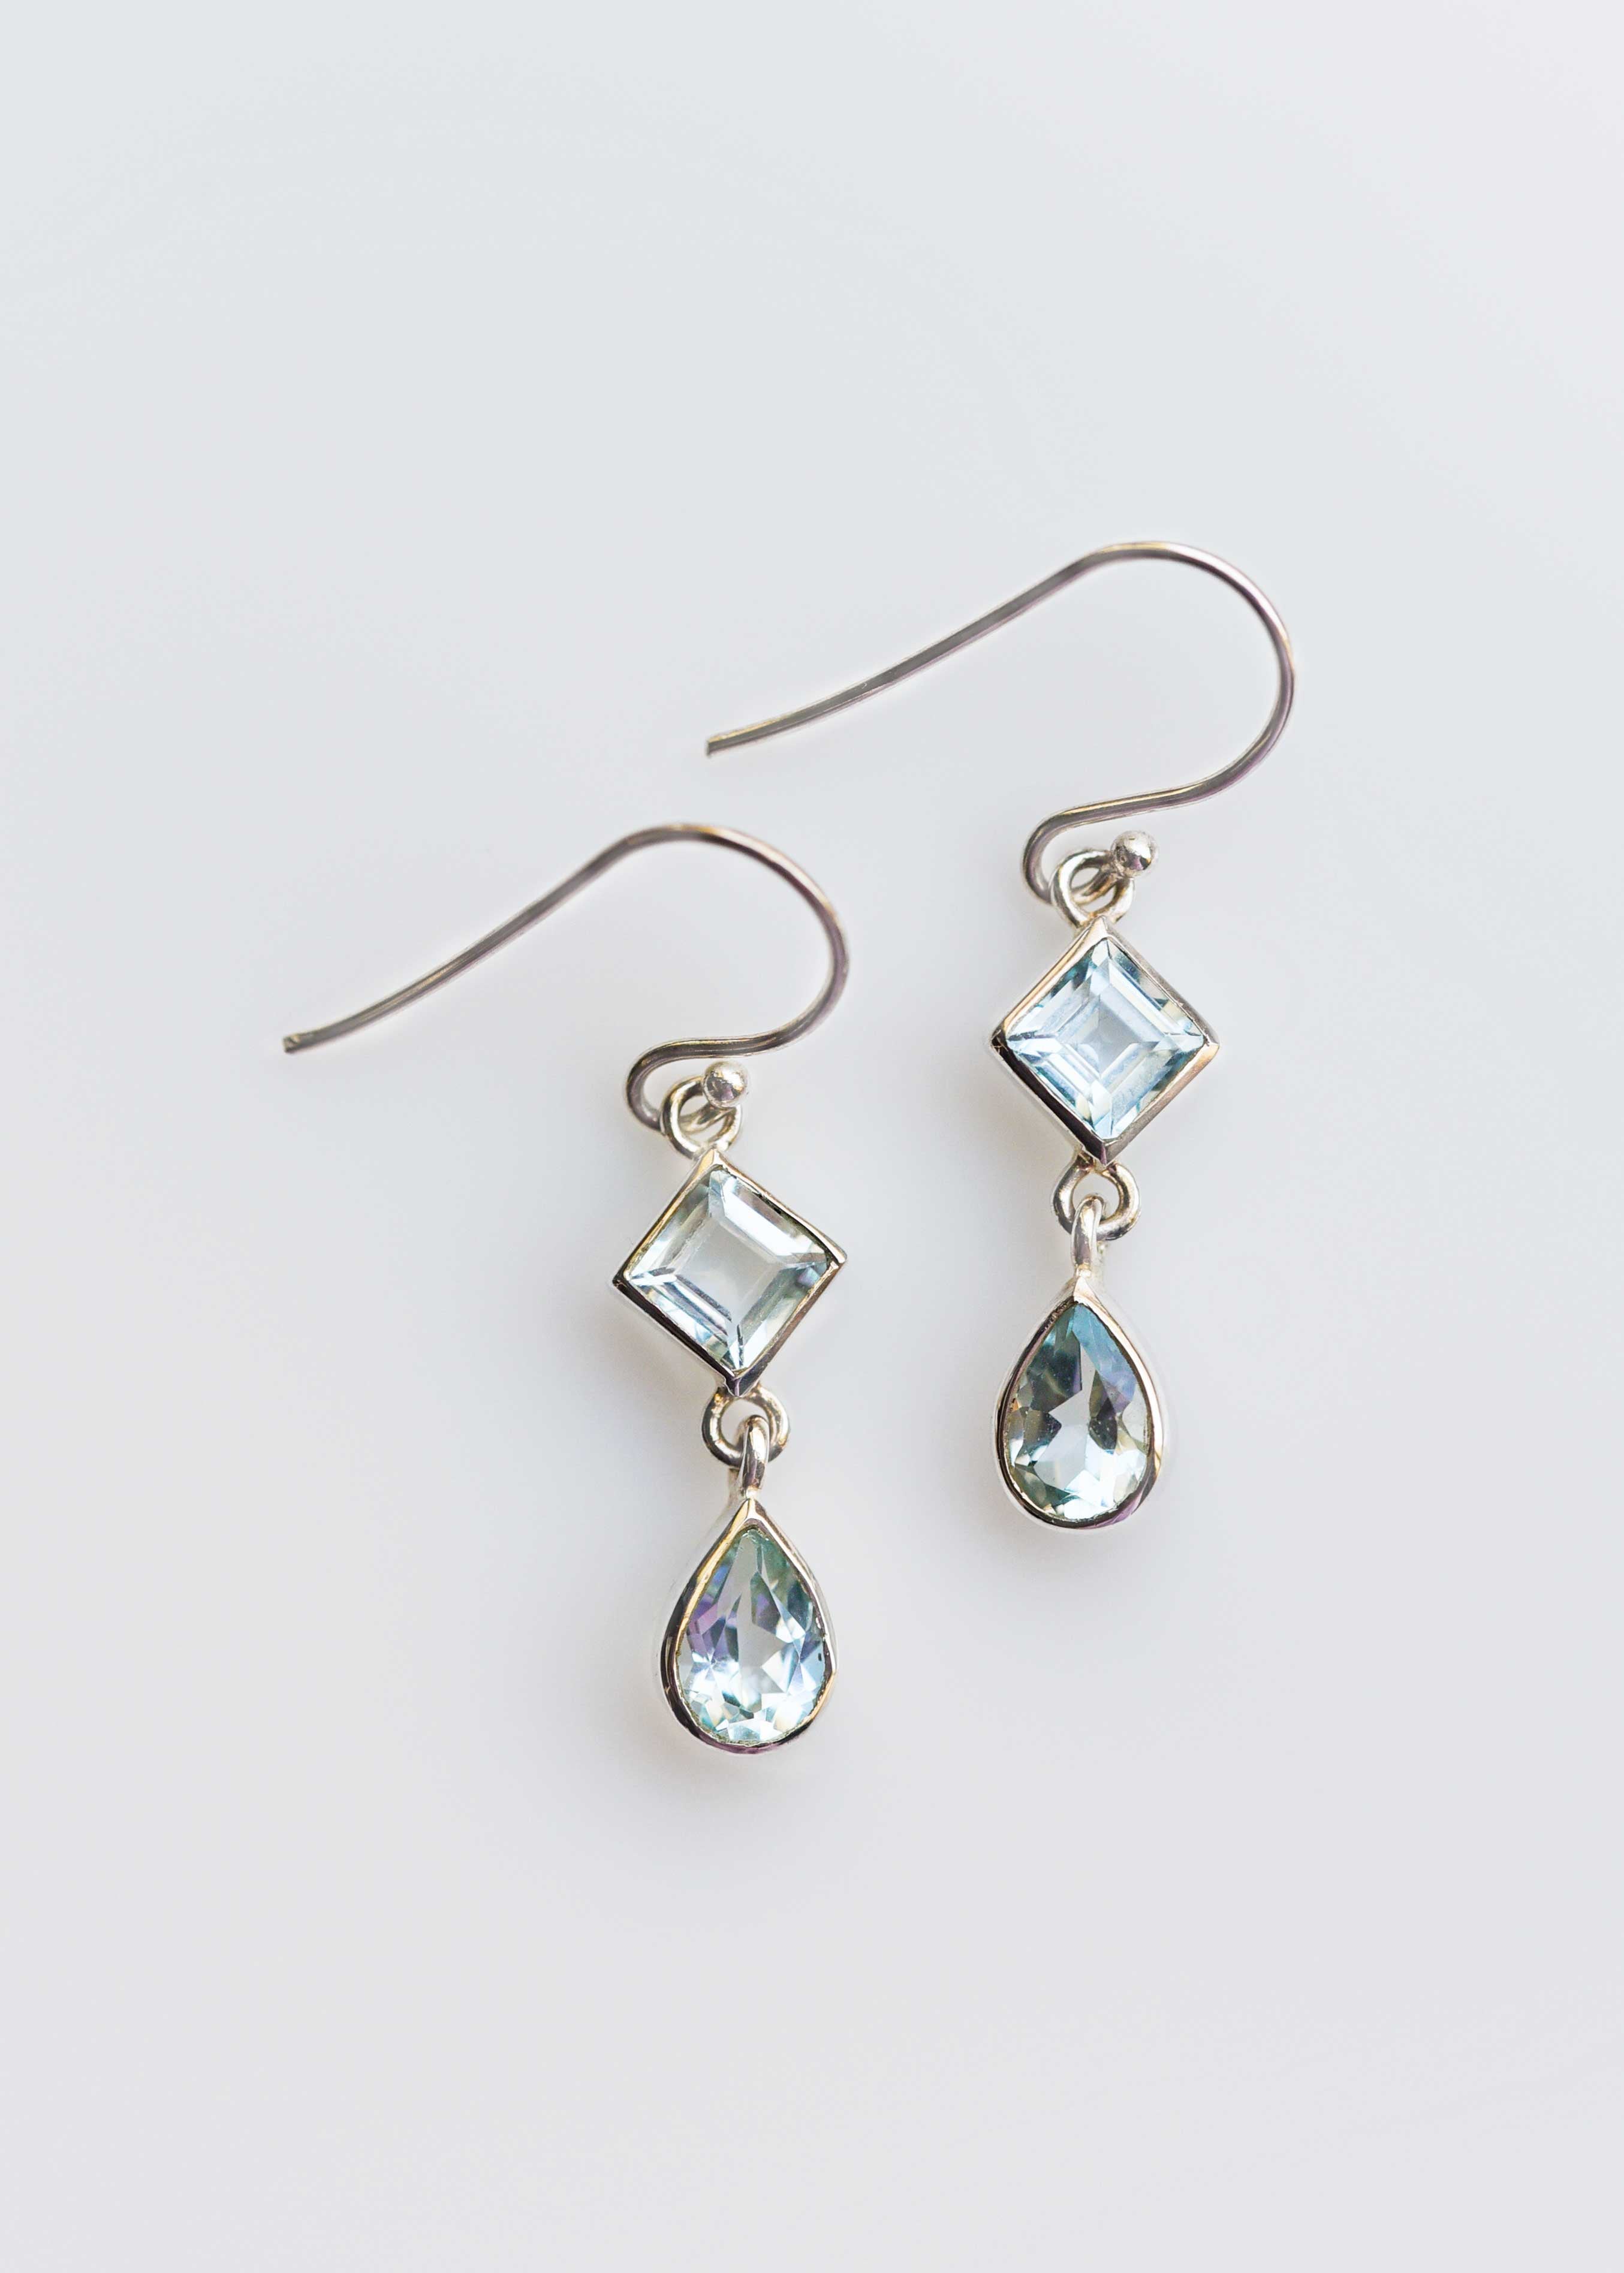 Blue Topaz Dangle Drop Earrings Sterling Silver gifts